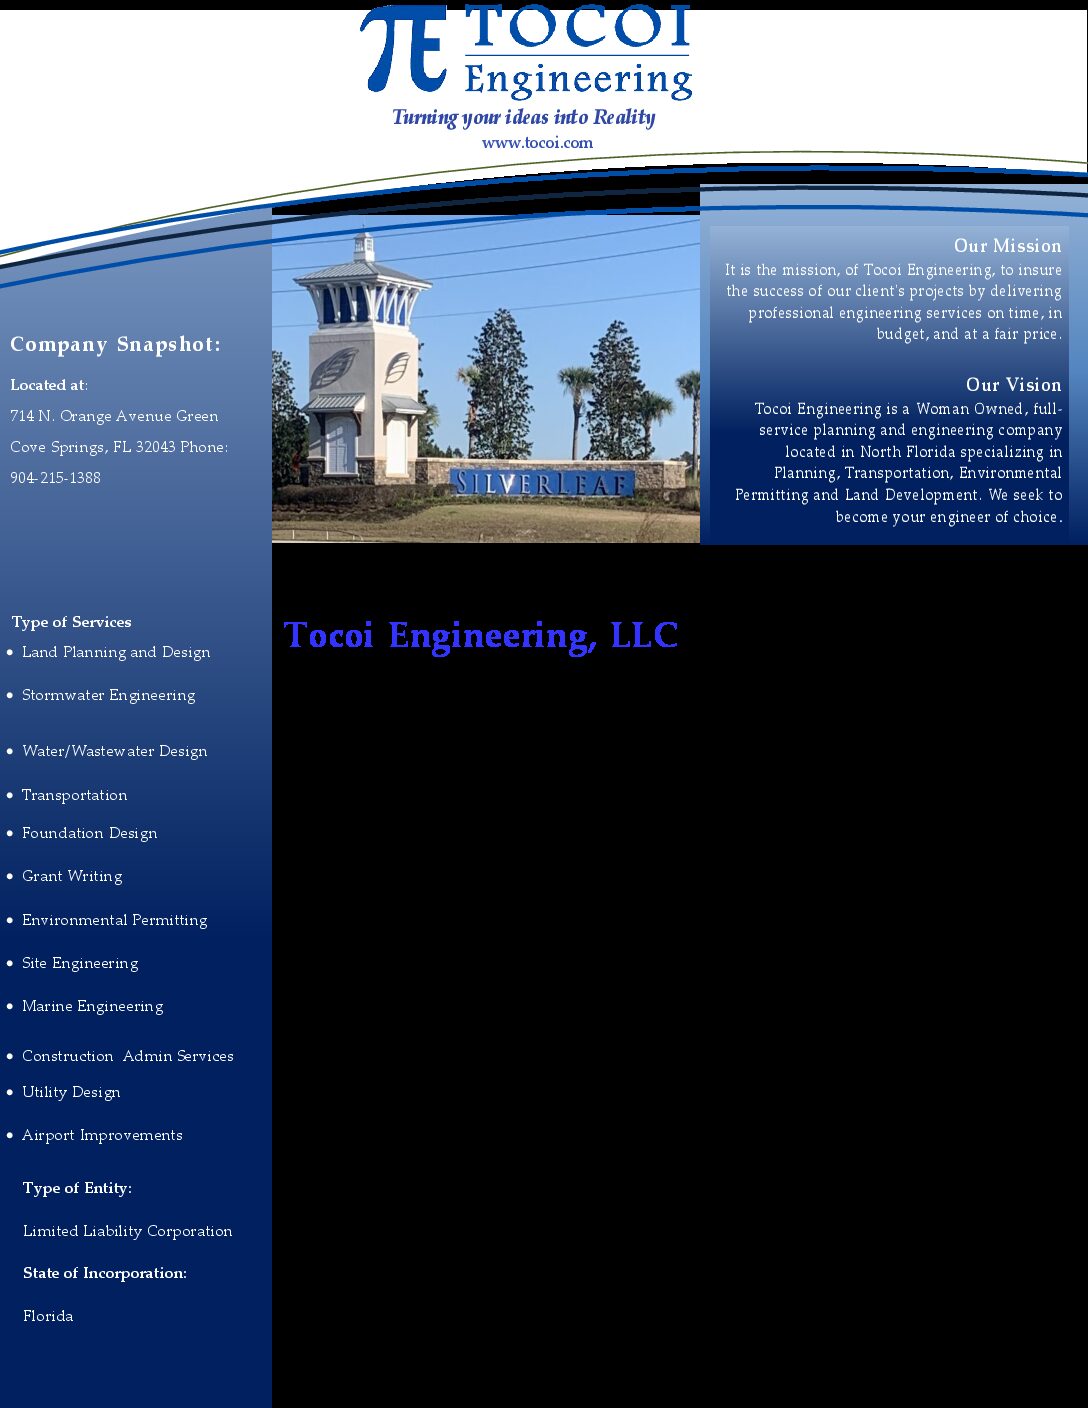 Tocoi Engineering, LLC